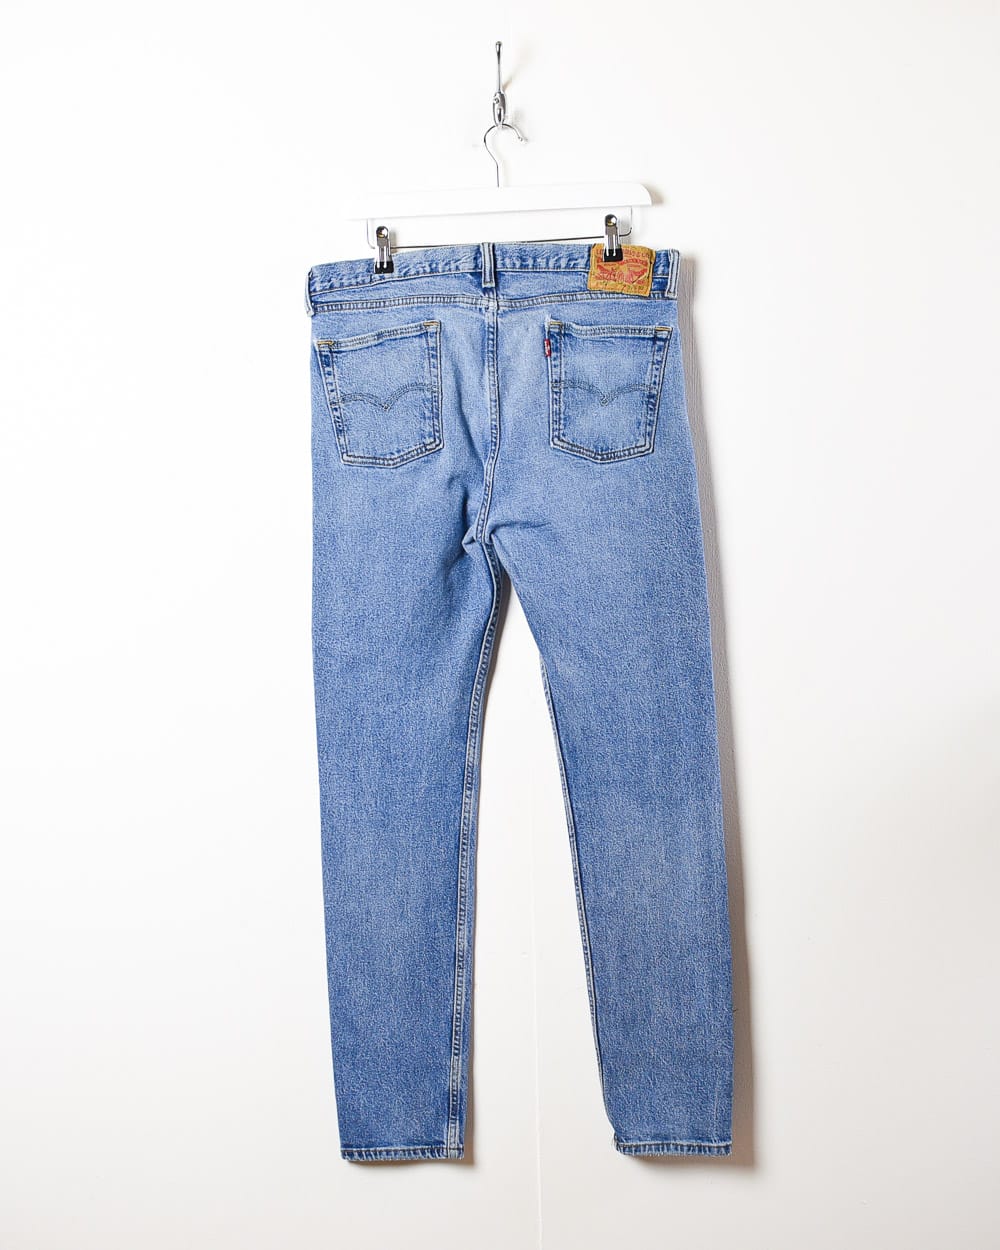 Blue Levi's 517 Jeans - W34 L31